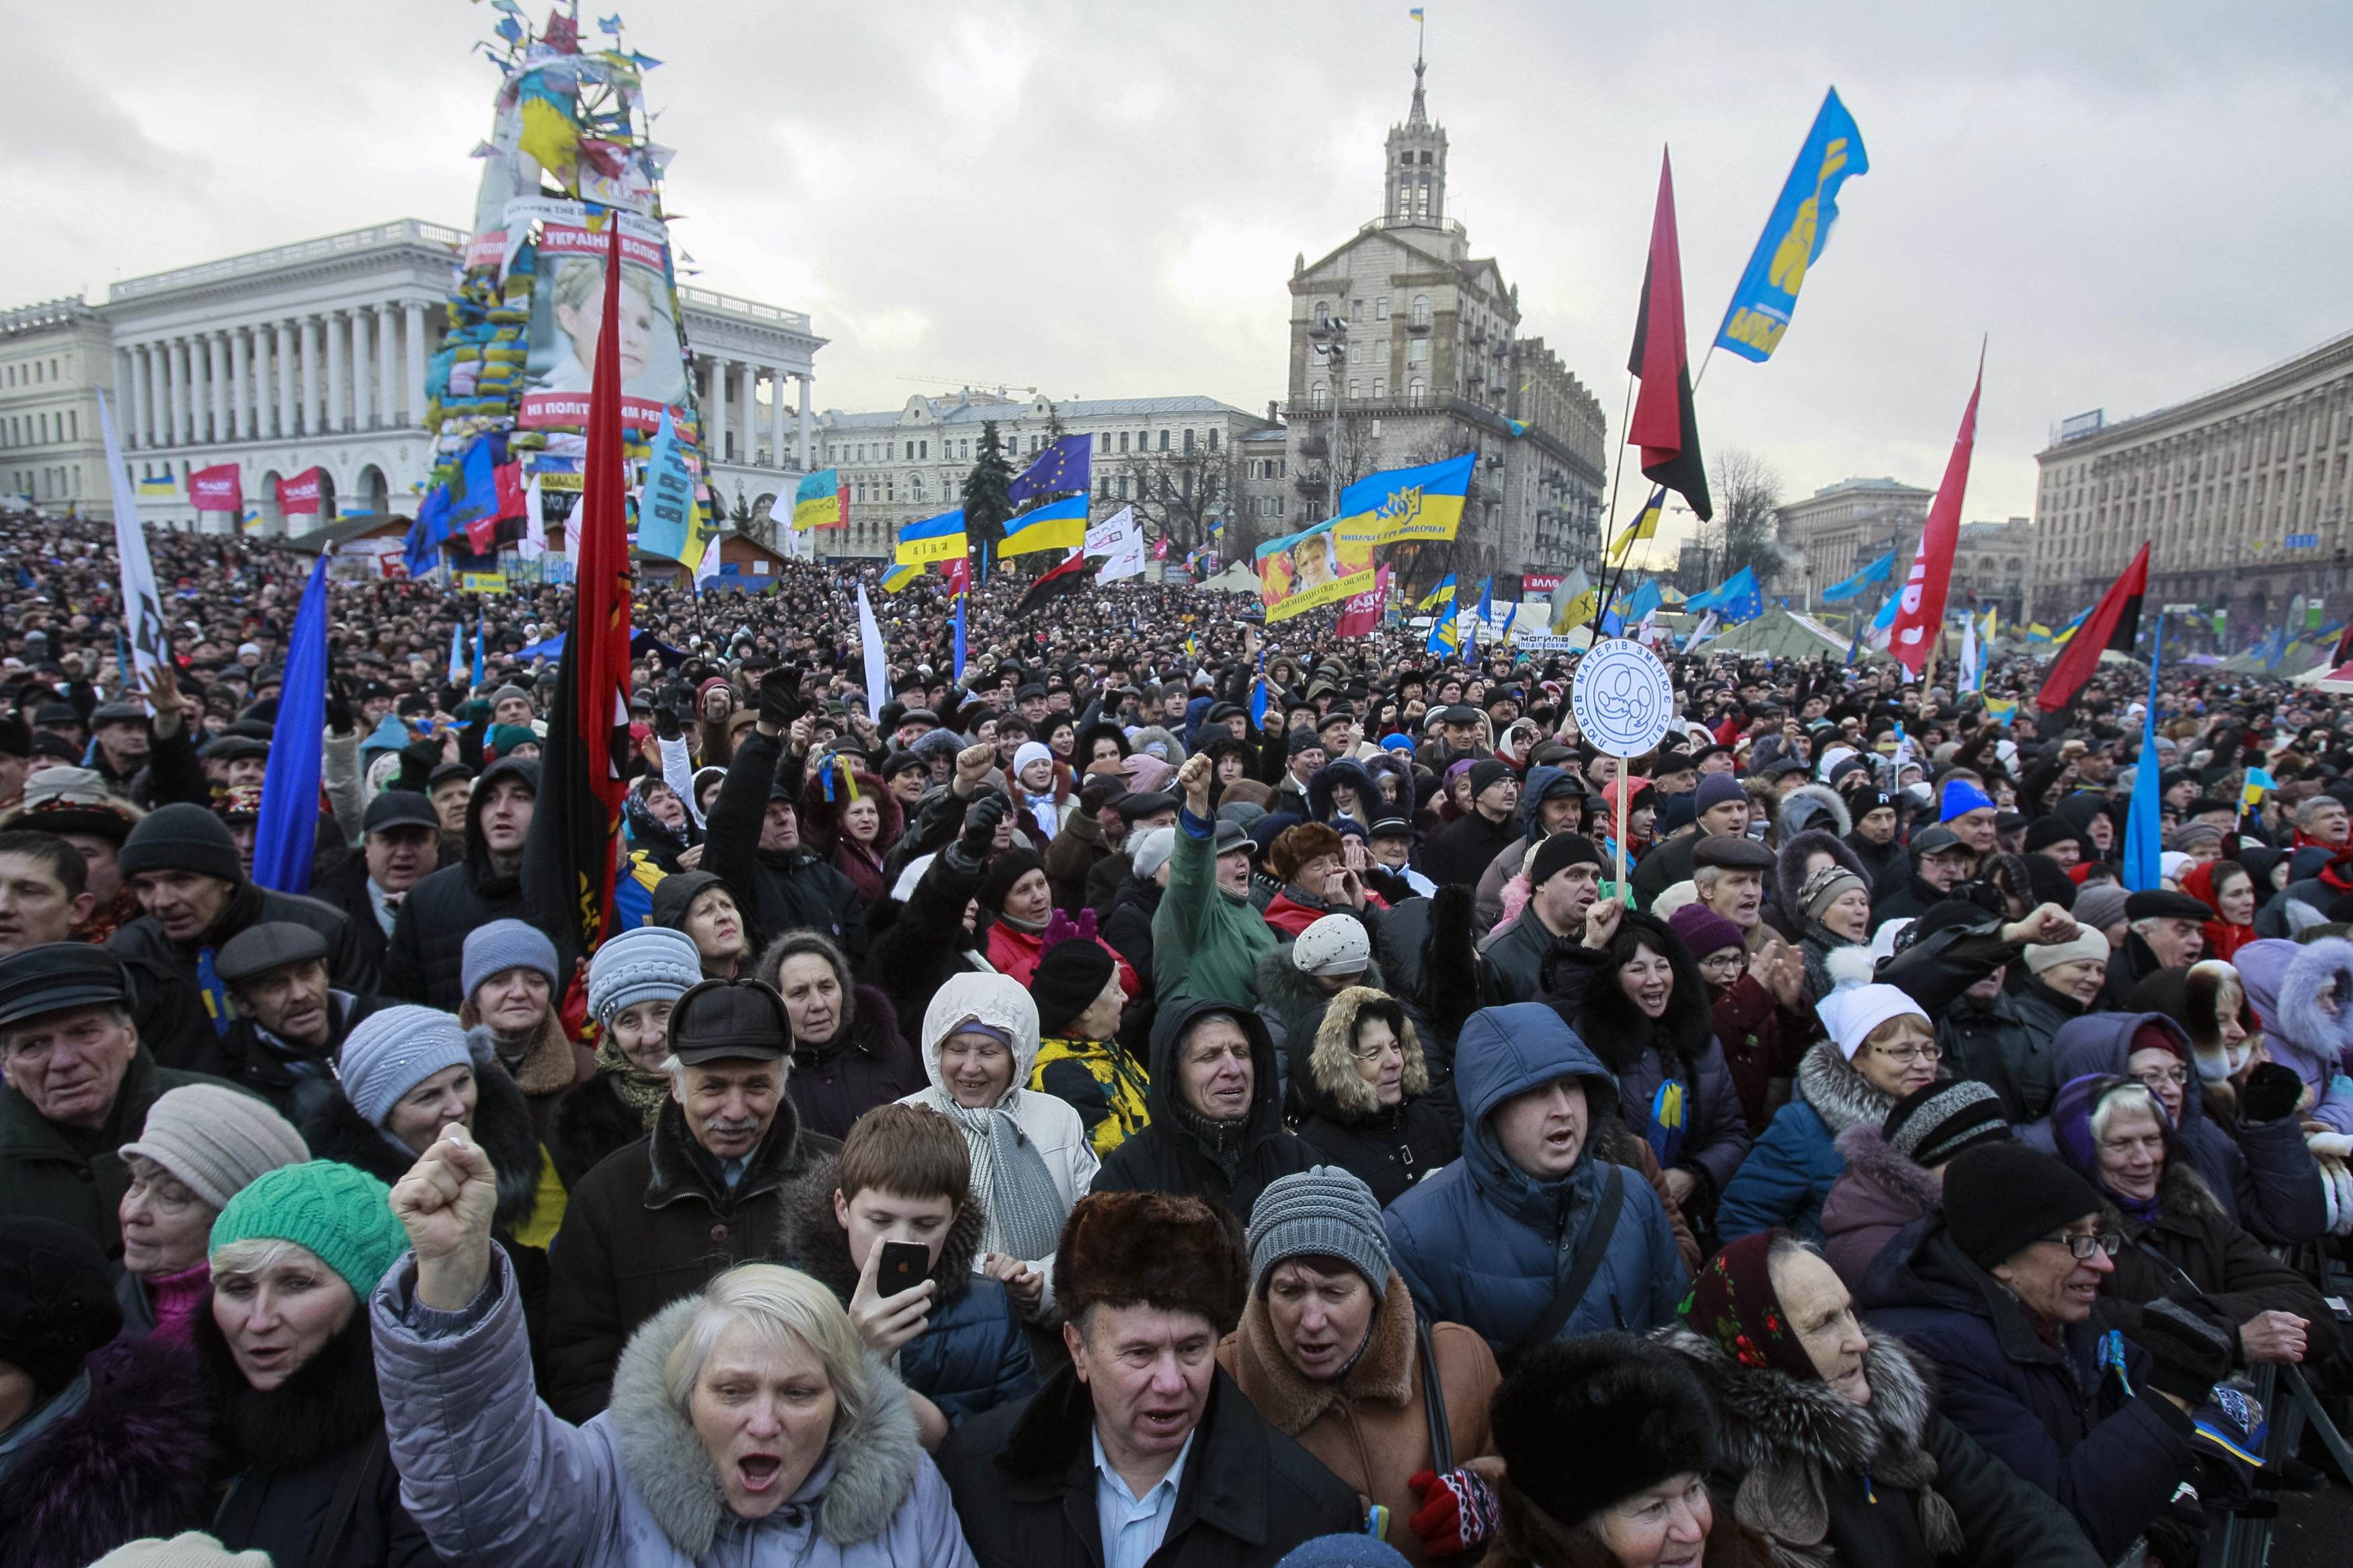 27 ноября 2013. Политический кризис на Украине (2013-2014). Кризис 2014 года в Украине. Митинги в Украине 2014.